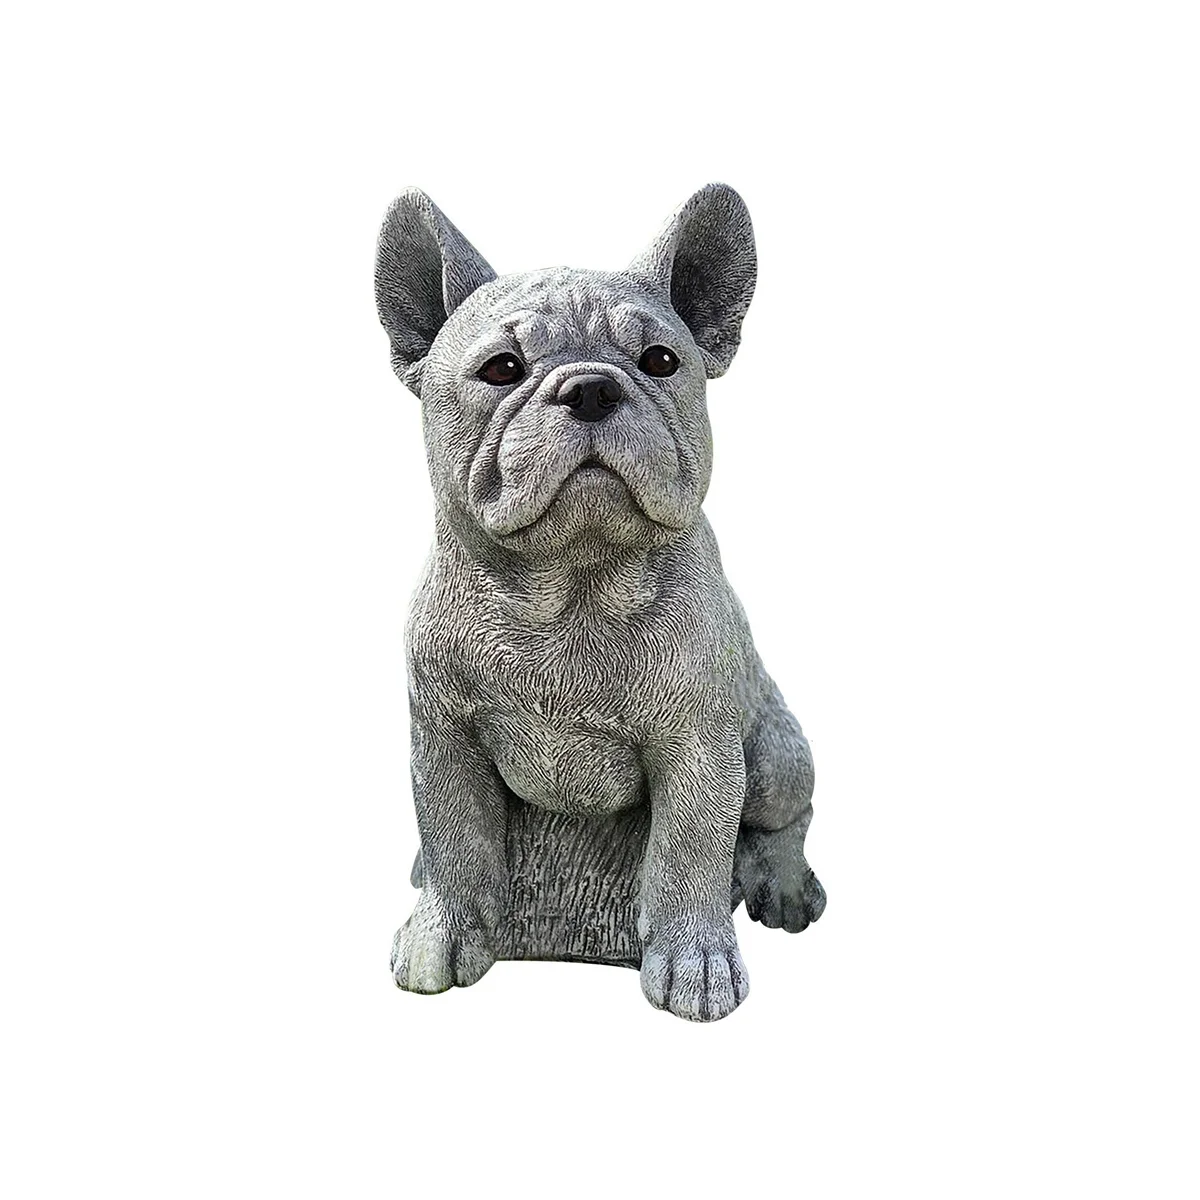 

Dog Gifts Garden Decor - Dog Statue Outdoor for Patio Garden Lawn Decor,Pet Memorial Sculpture, Standing Position